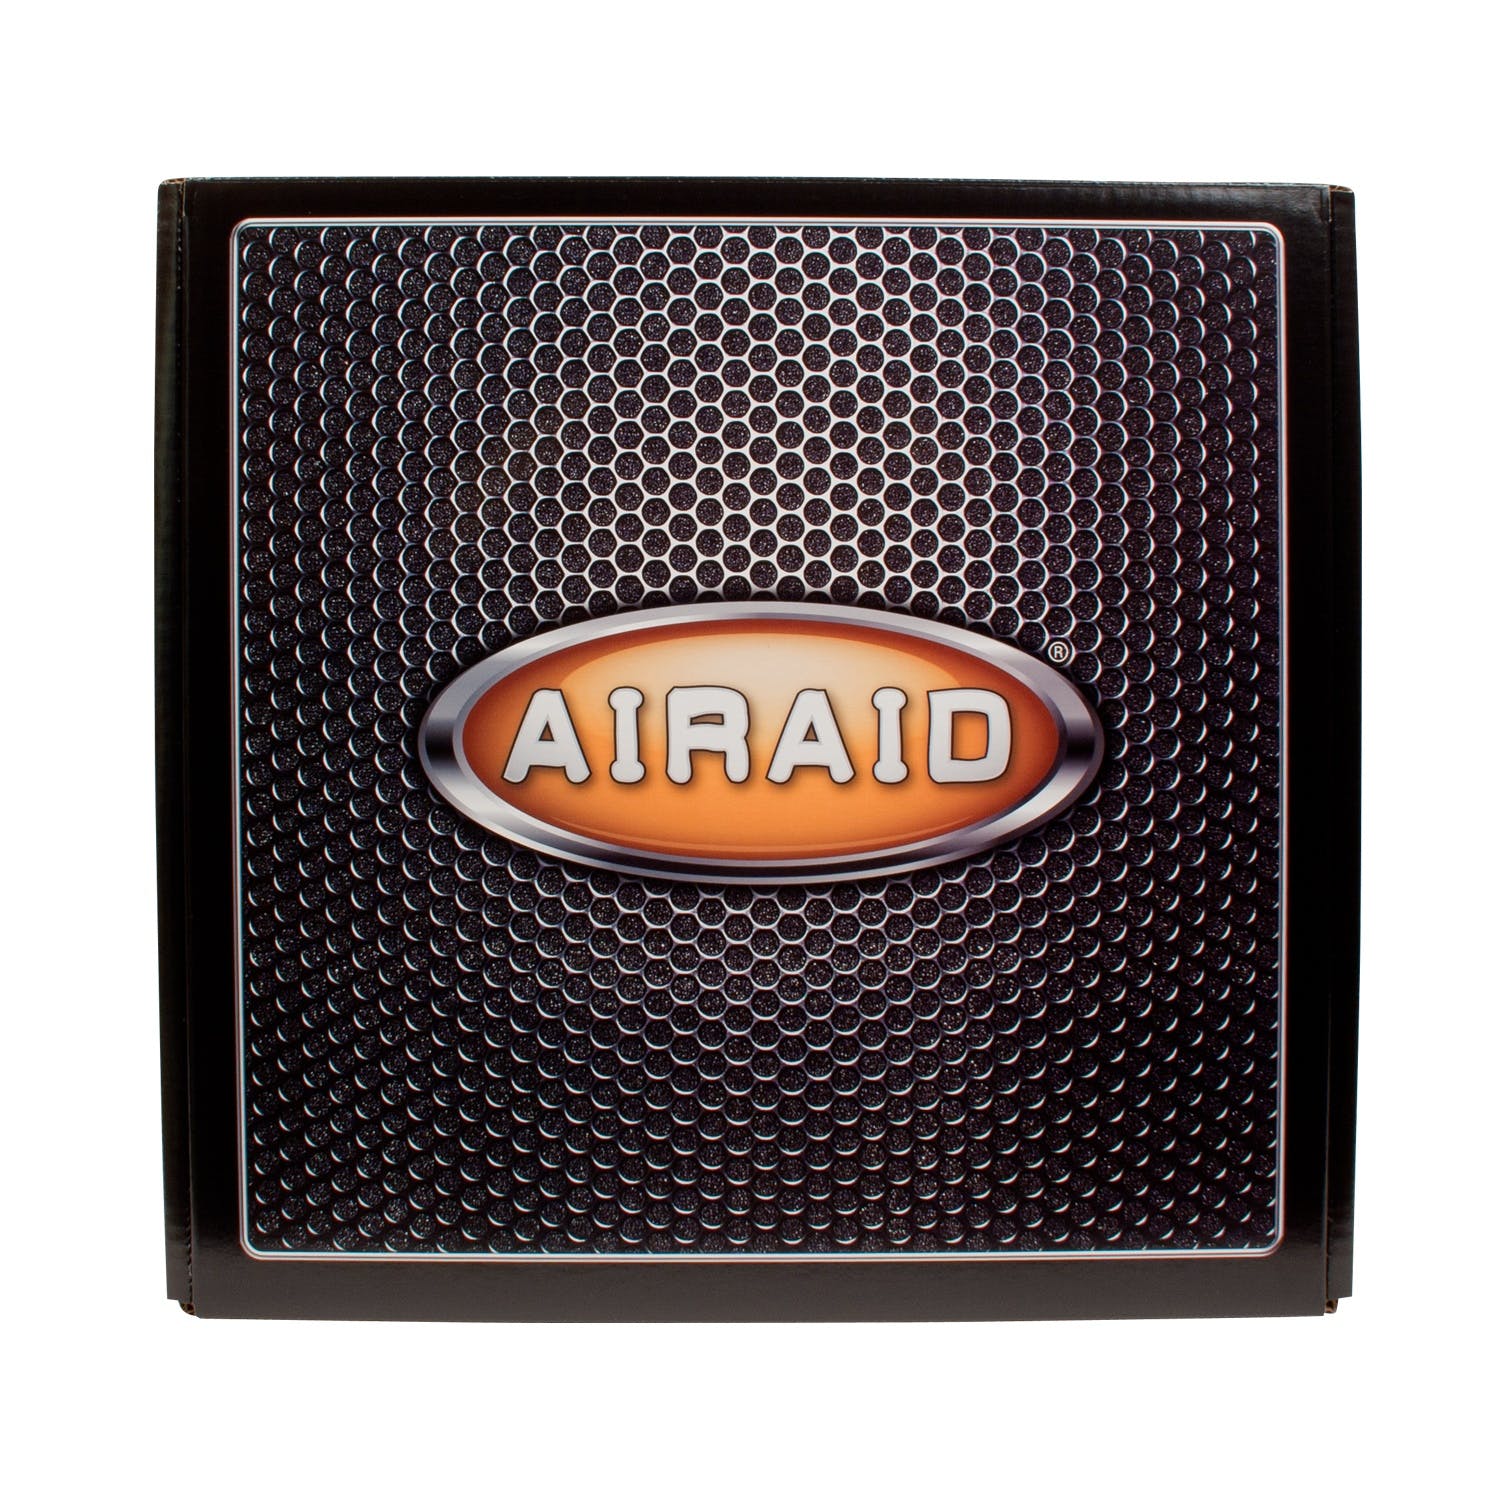 AIRAID 200-146 Performance Air Intake System